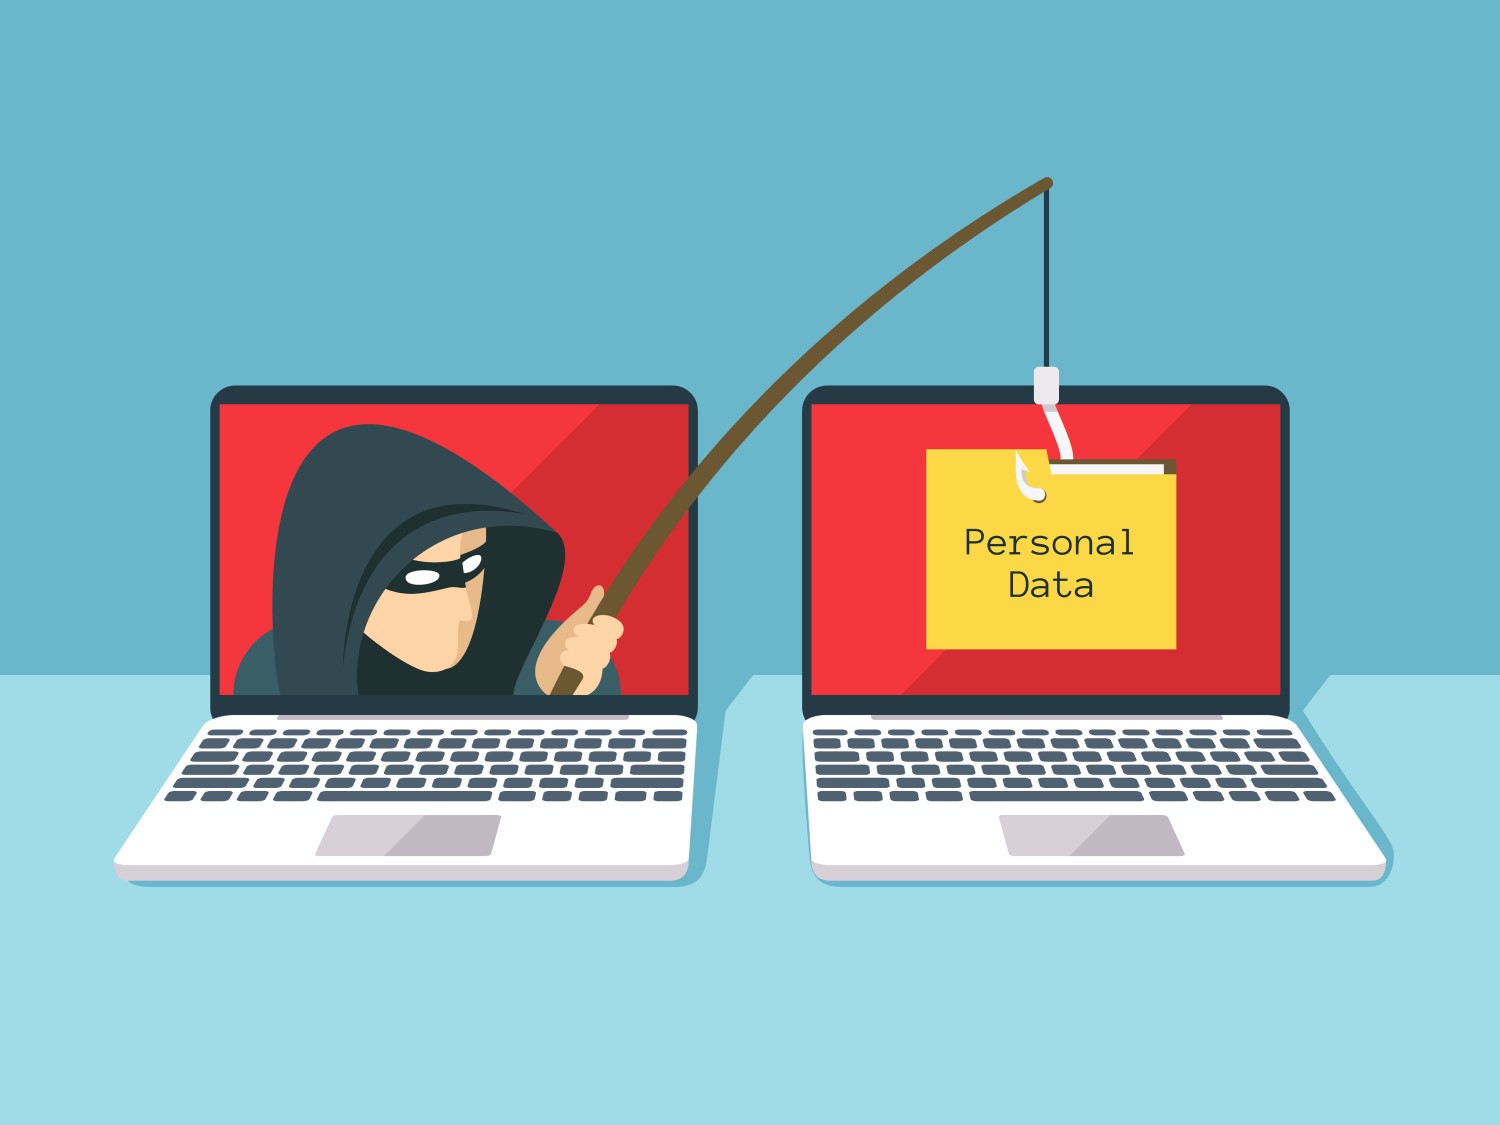 Ilustração de bandido virtual na tela de um notebook roubando dados pessoais de outro computador.